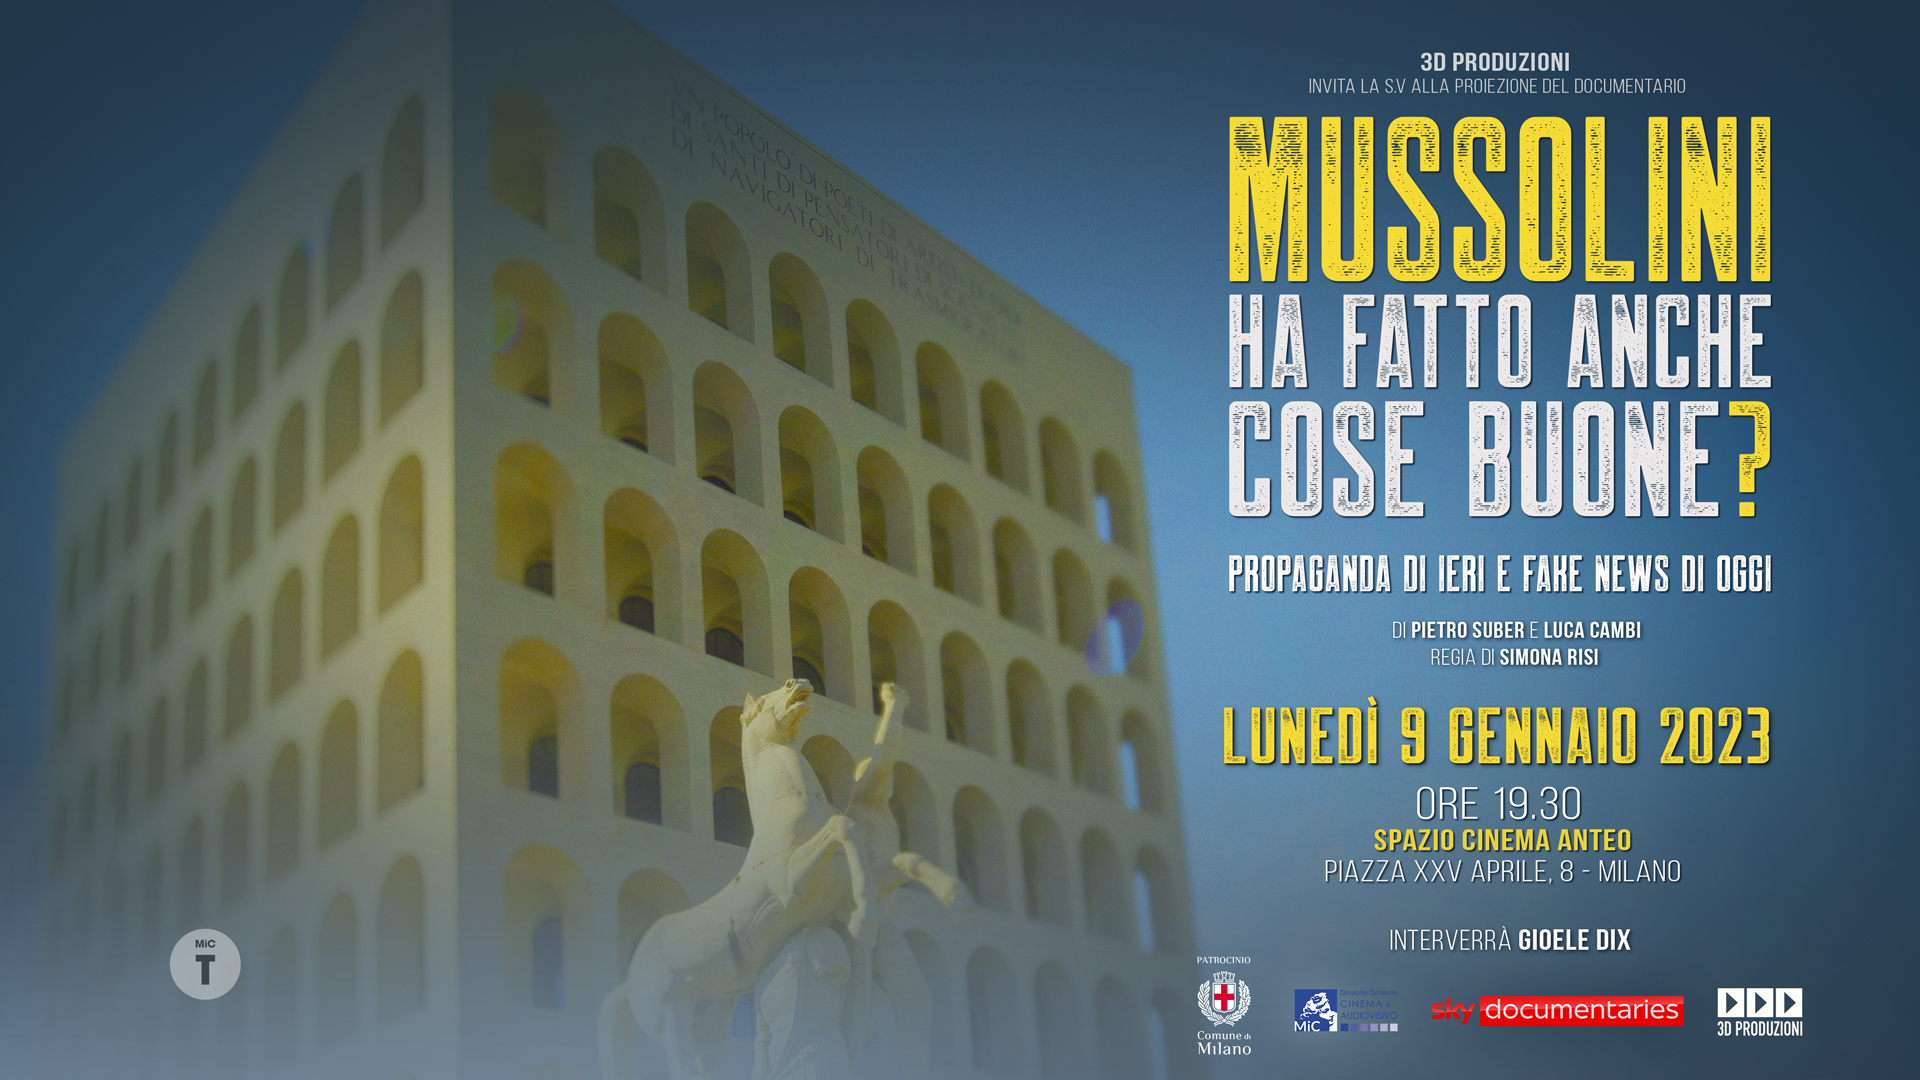 Proiezione documentario "Mussolini ha fatto anche cose buone? Propaganda di ieri, fake news di oggi"